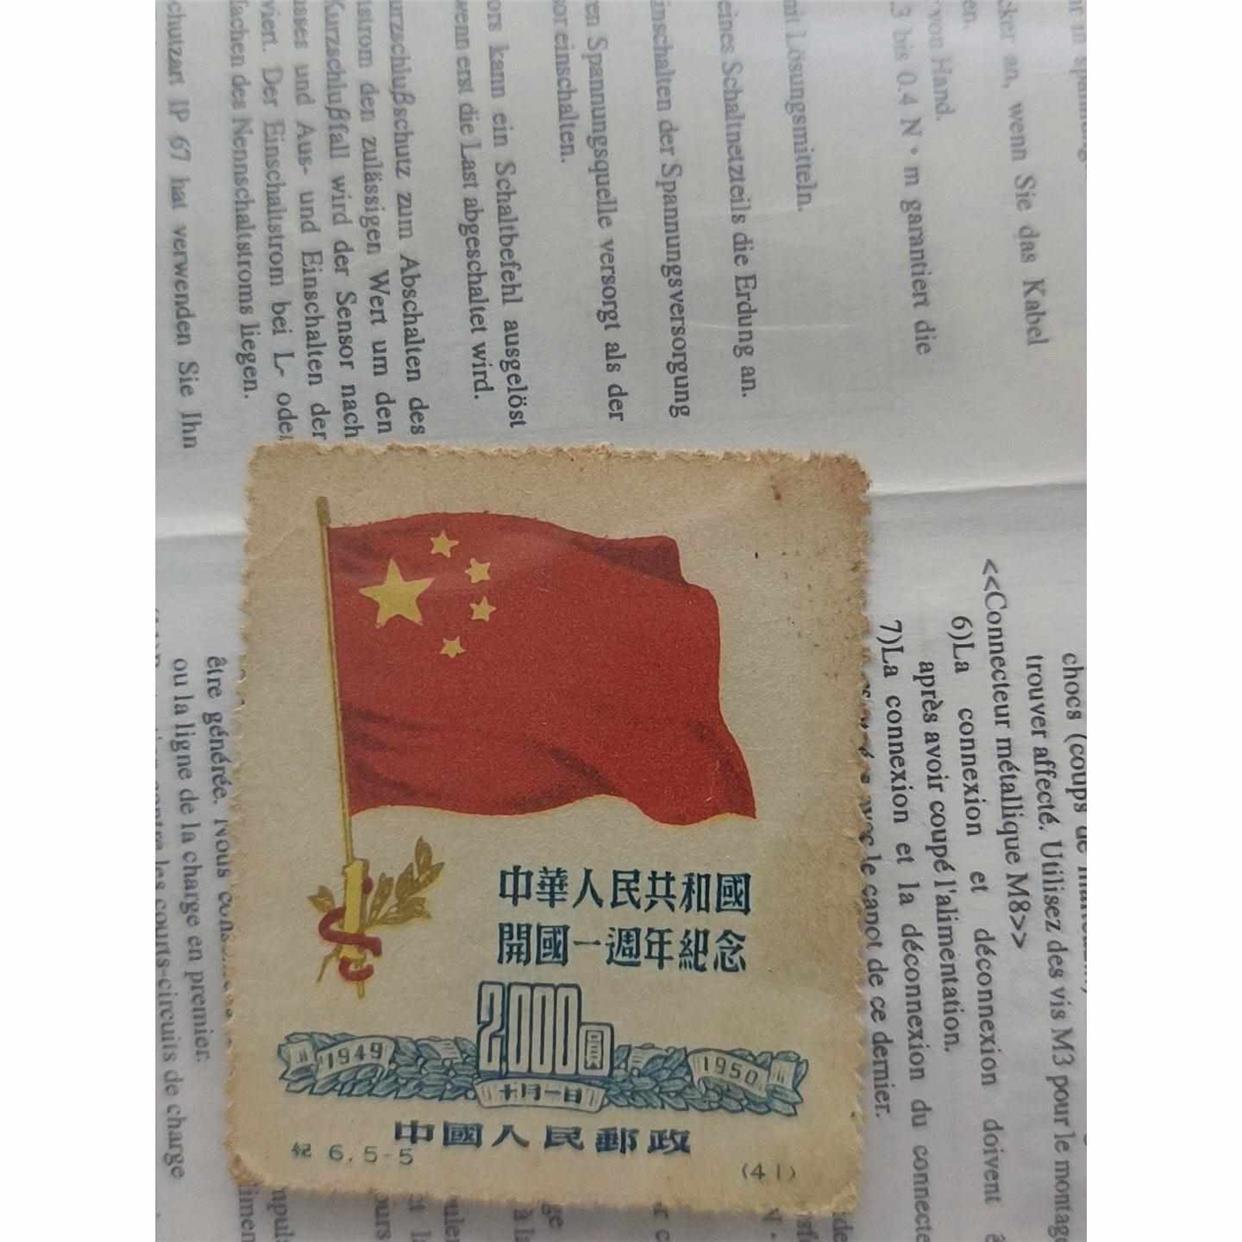 中华人民共和国开国一周年纪念邮票面值2000元邮票.先议价